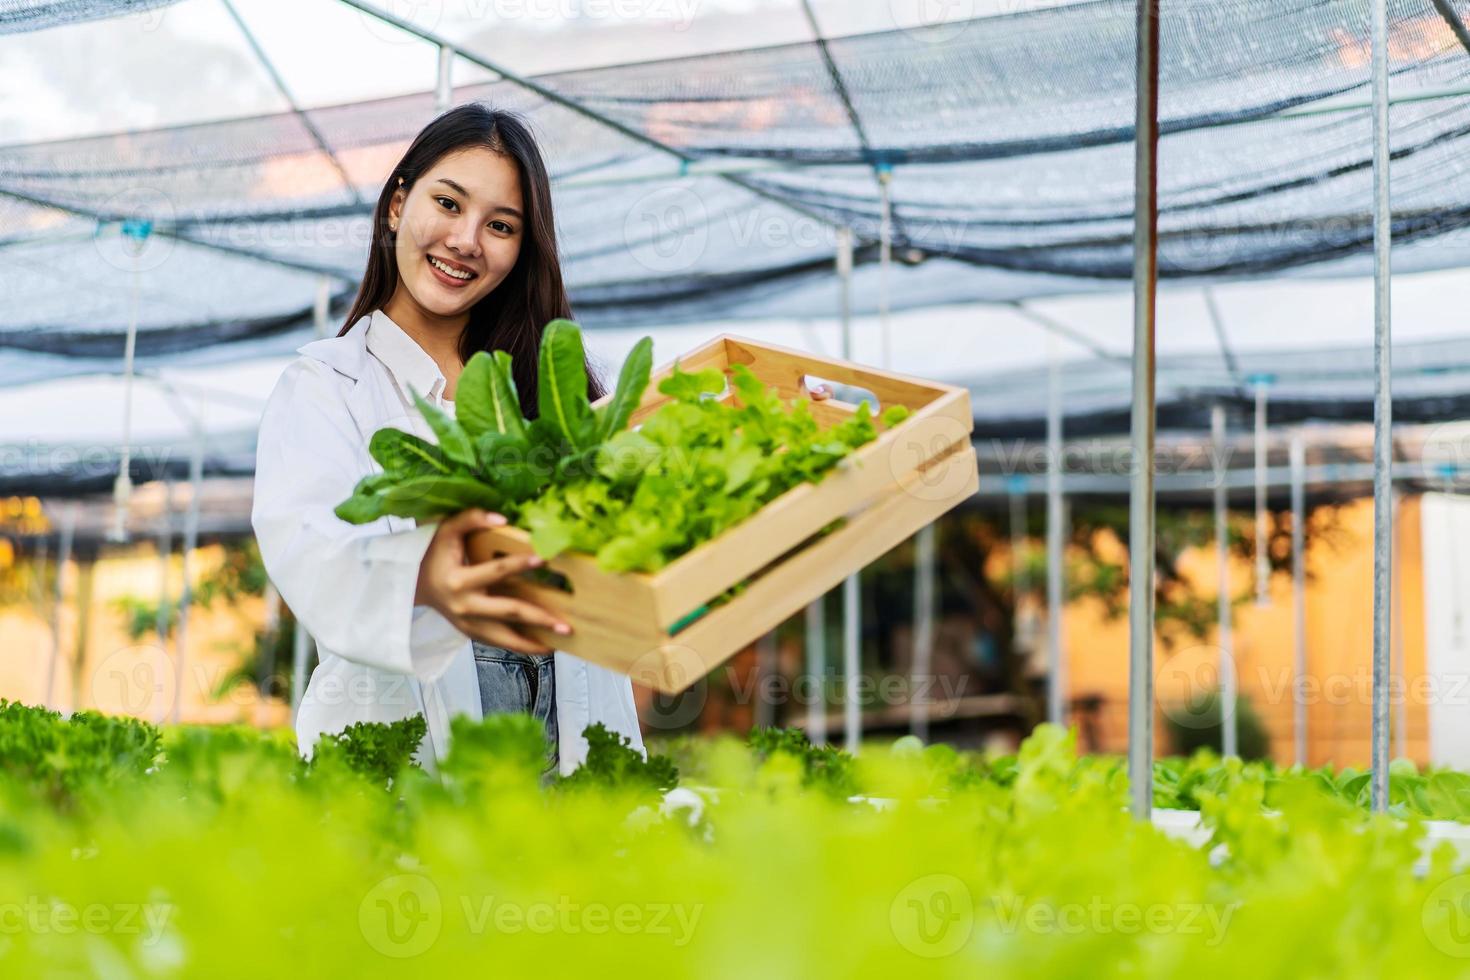 asiatisk forskarkvinna som håller en trälåda med ekologisk grönsakssallad från hydroponics medan hon arbetar inne på en stor gård, vilket resulterar i ekologiska grönsaker som marknaden behöver. foto